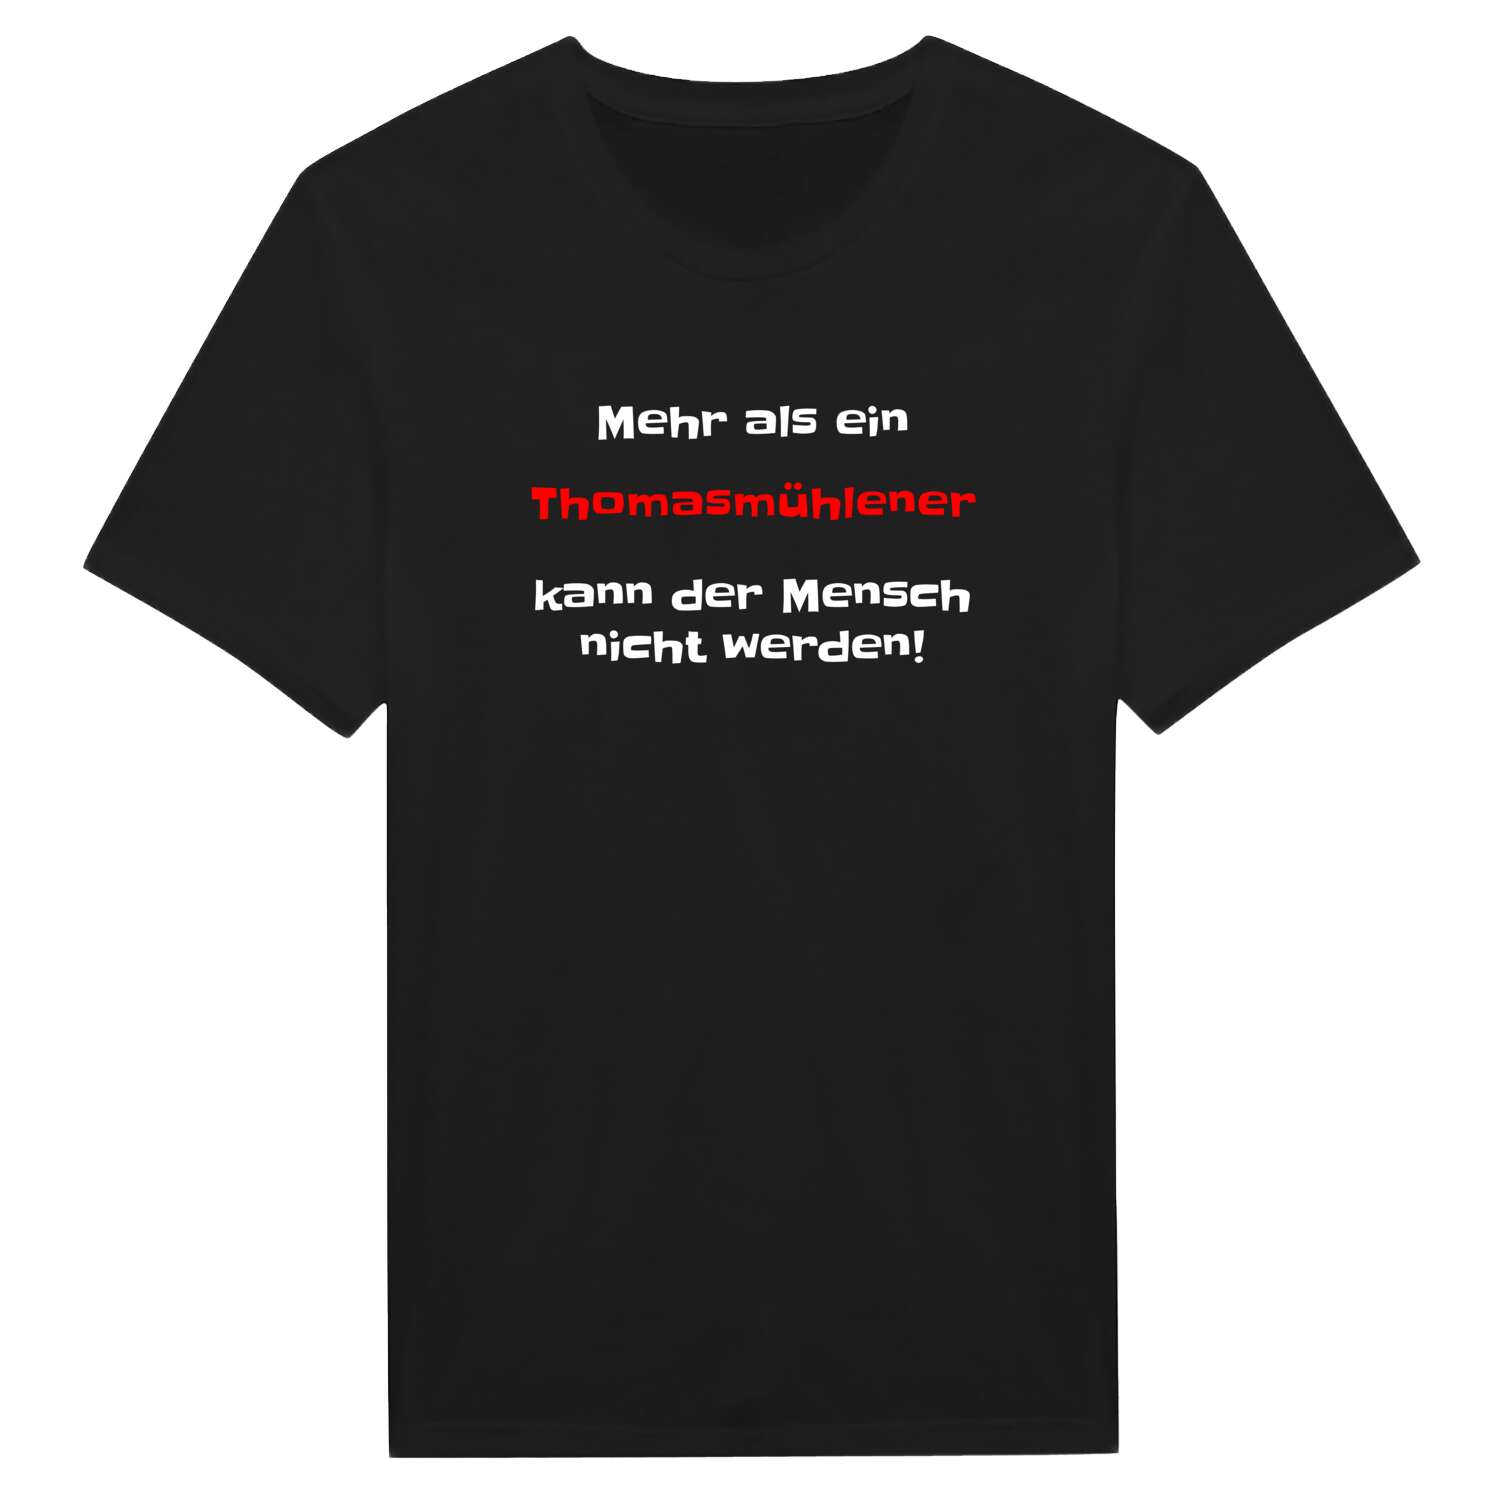 Thomasmühle T-Shirt »Mehr als ein«